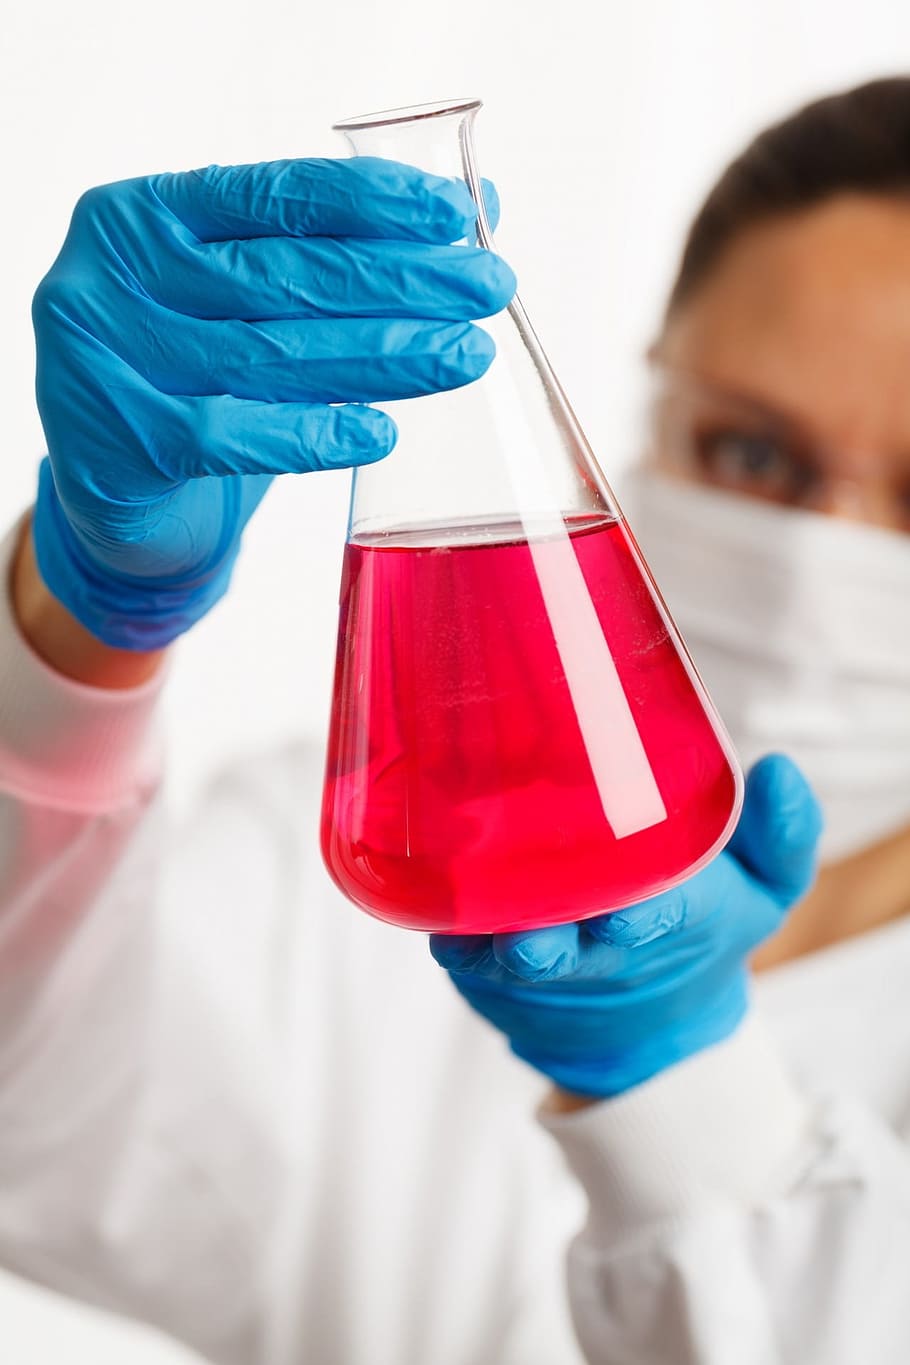 orang, putih, gaun laboratorium, biru, sarung tangan, memegang, membersihkan, labu kaca laboratorium, merah, cair